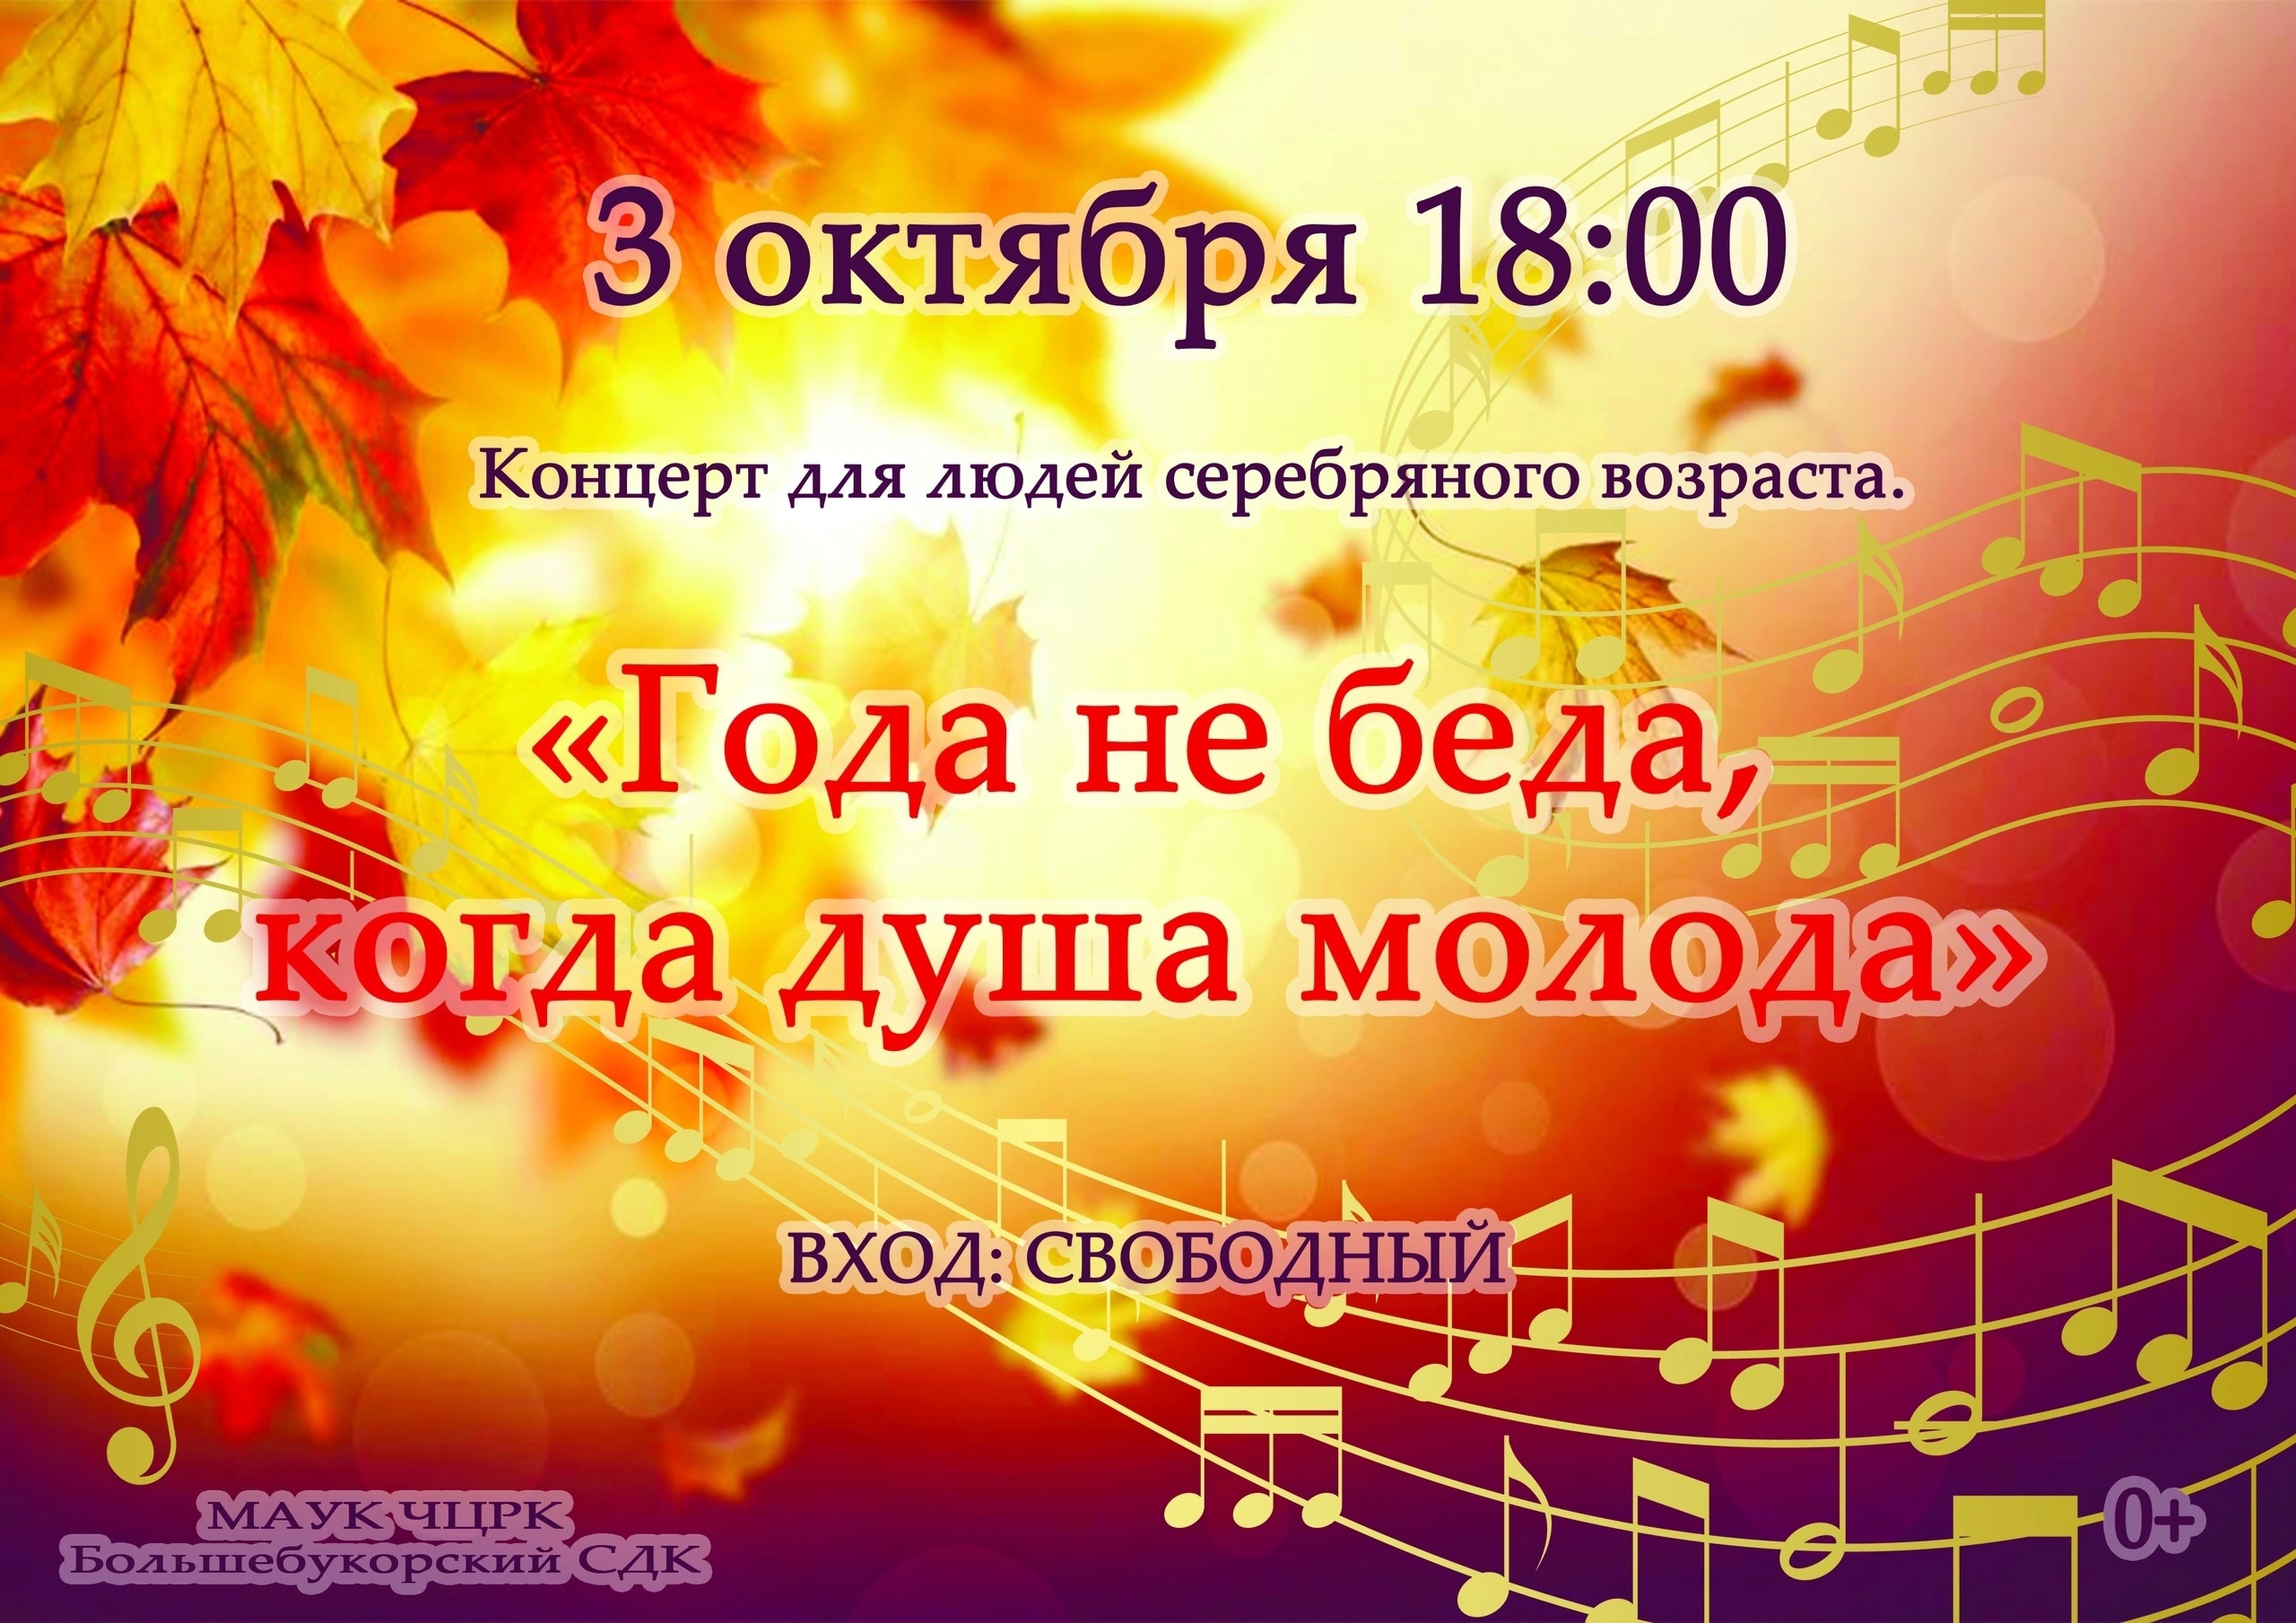 В Большебукорском сельском доме культуры состоится концерт для людей серебряного возраста